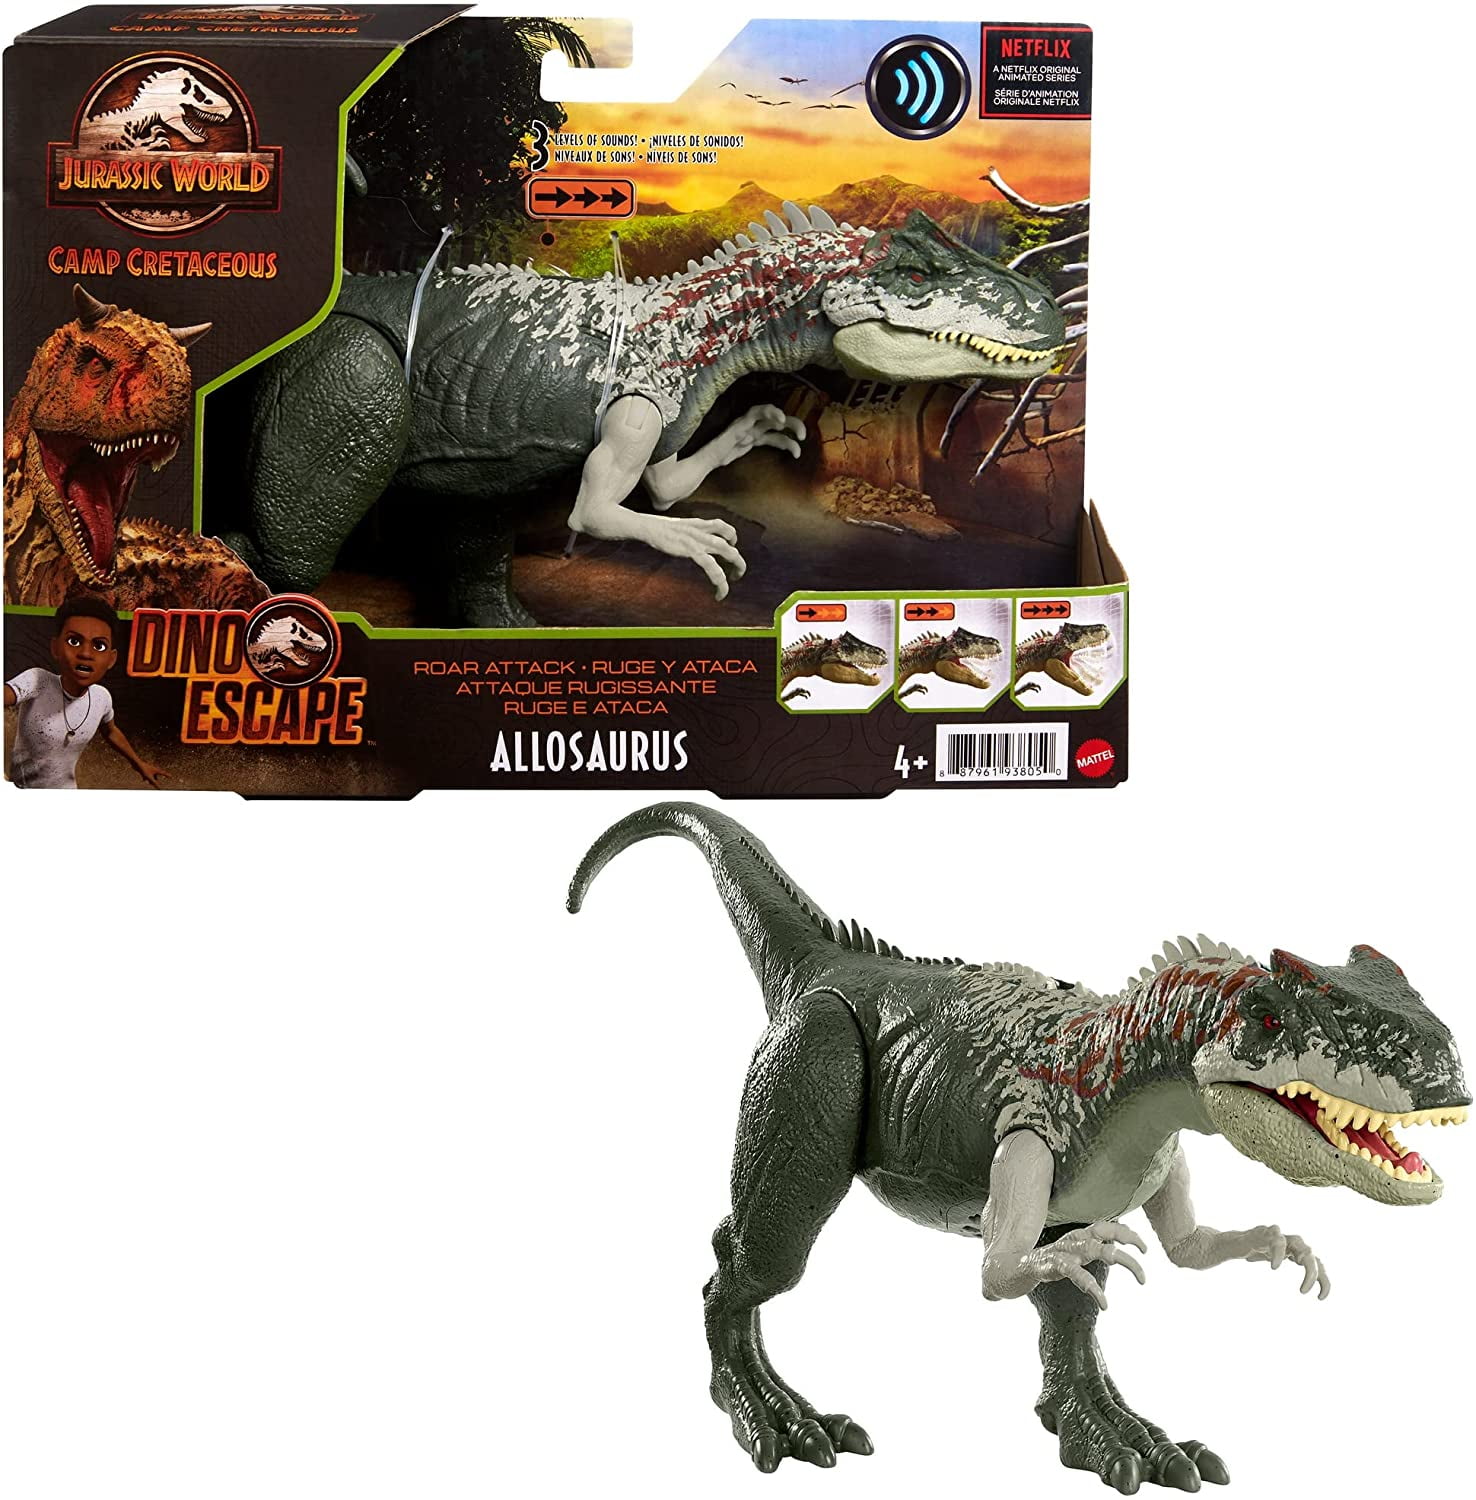 Jurassic World Park Allosaurus Dinosaur Action Figure Model Toy For Children 